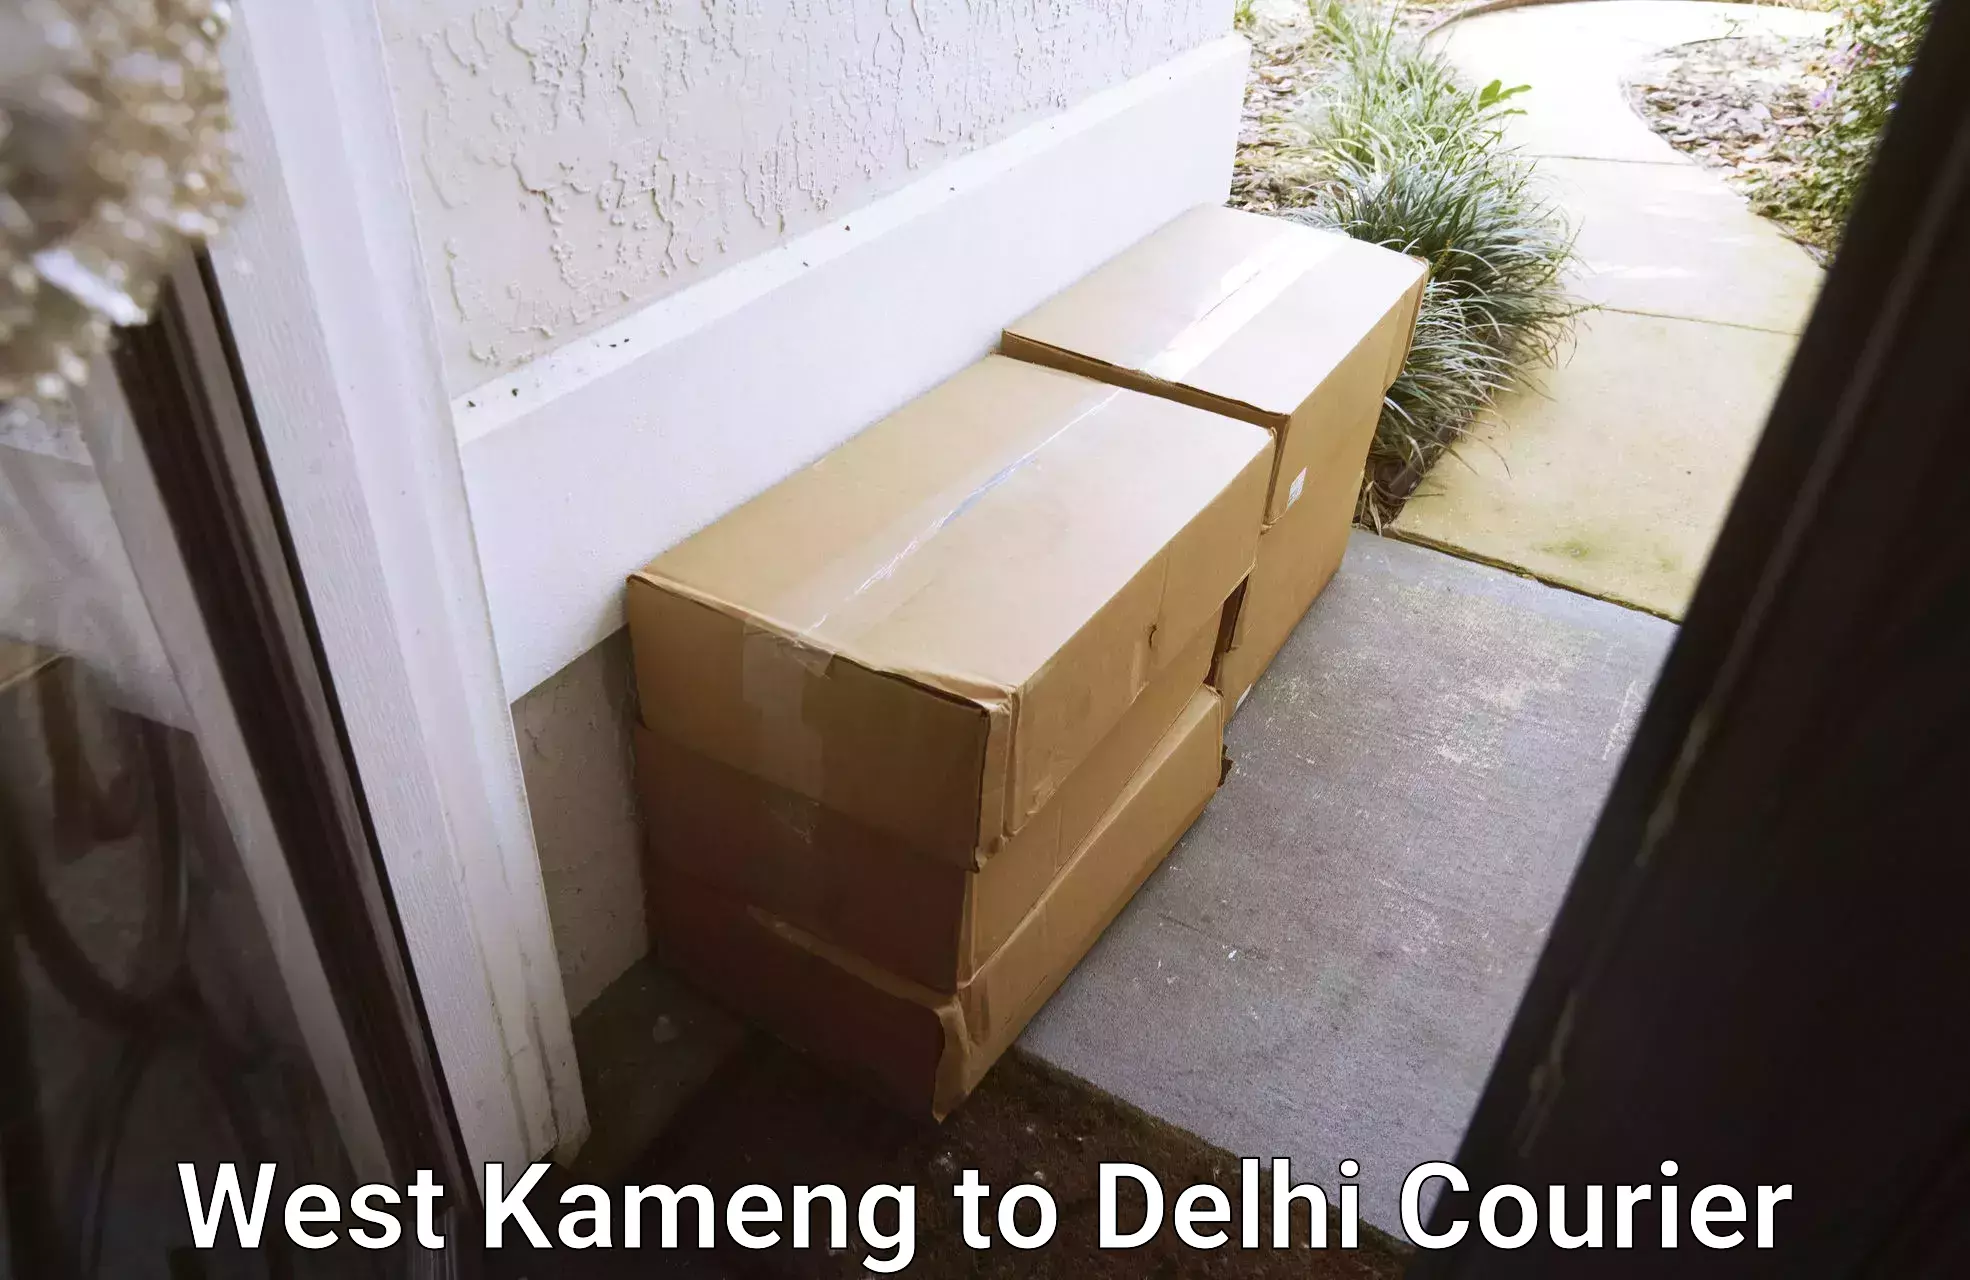 Cash on delivery service West Kameng to Krishna Nagar